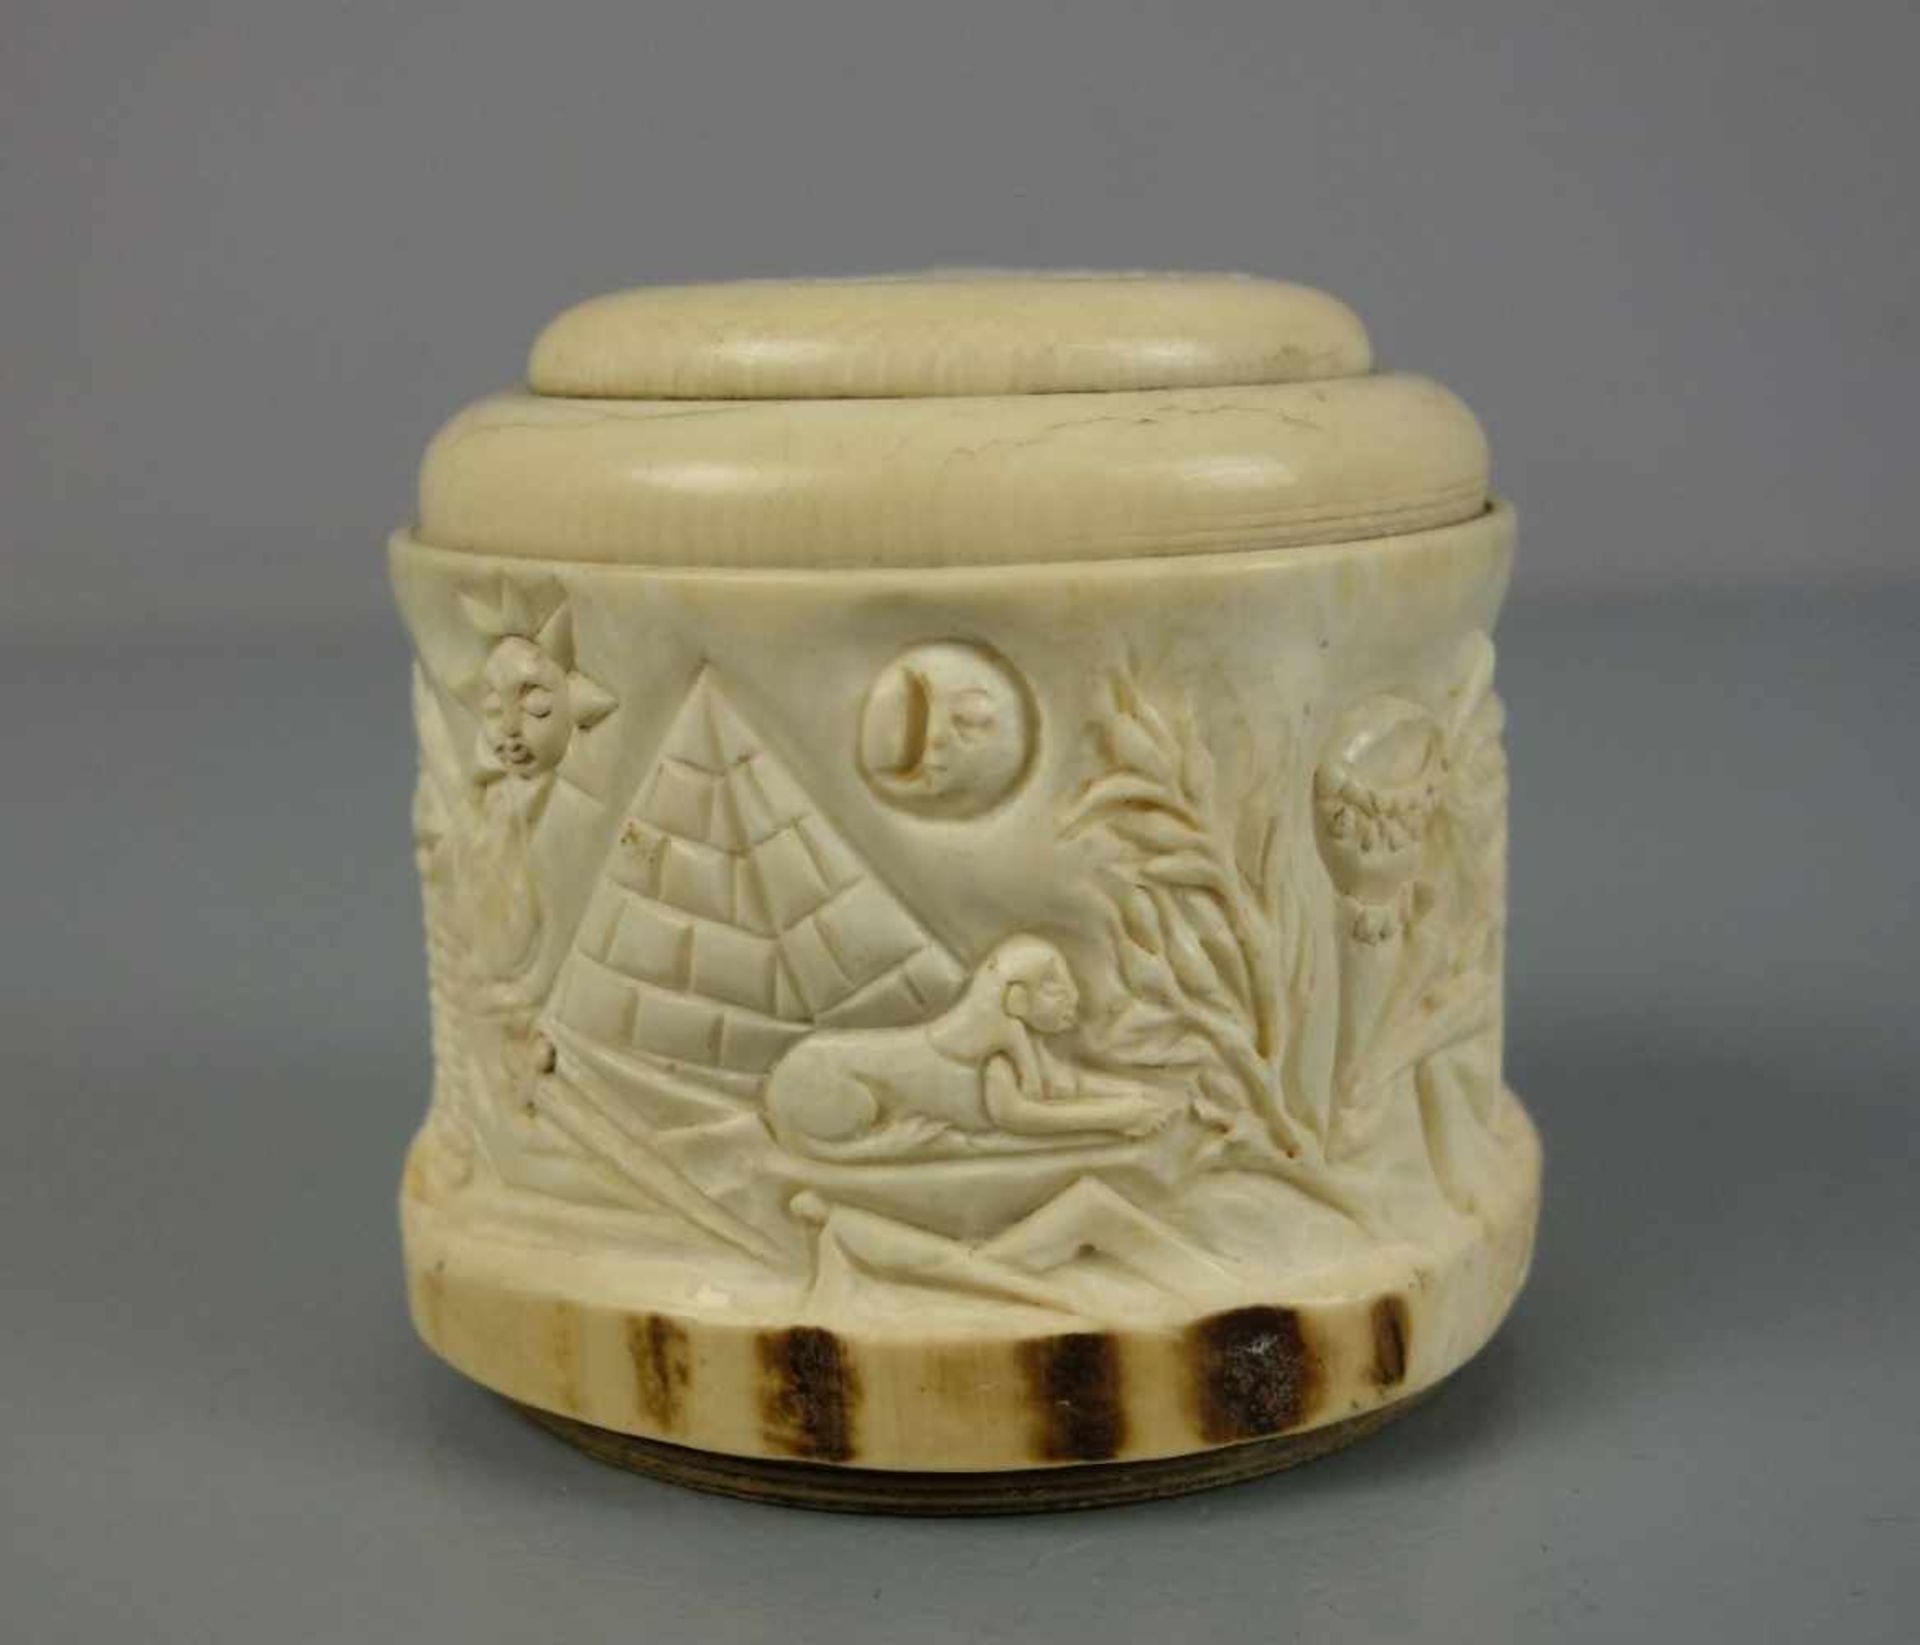 FREIMAURER SPARDOSE / masonic money box, 19. Jh., Elfenbein und Holz , Frankreich, datiert "1839" - Image 3 of 5